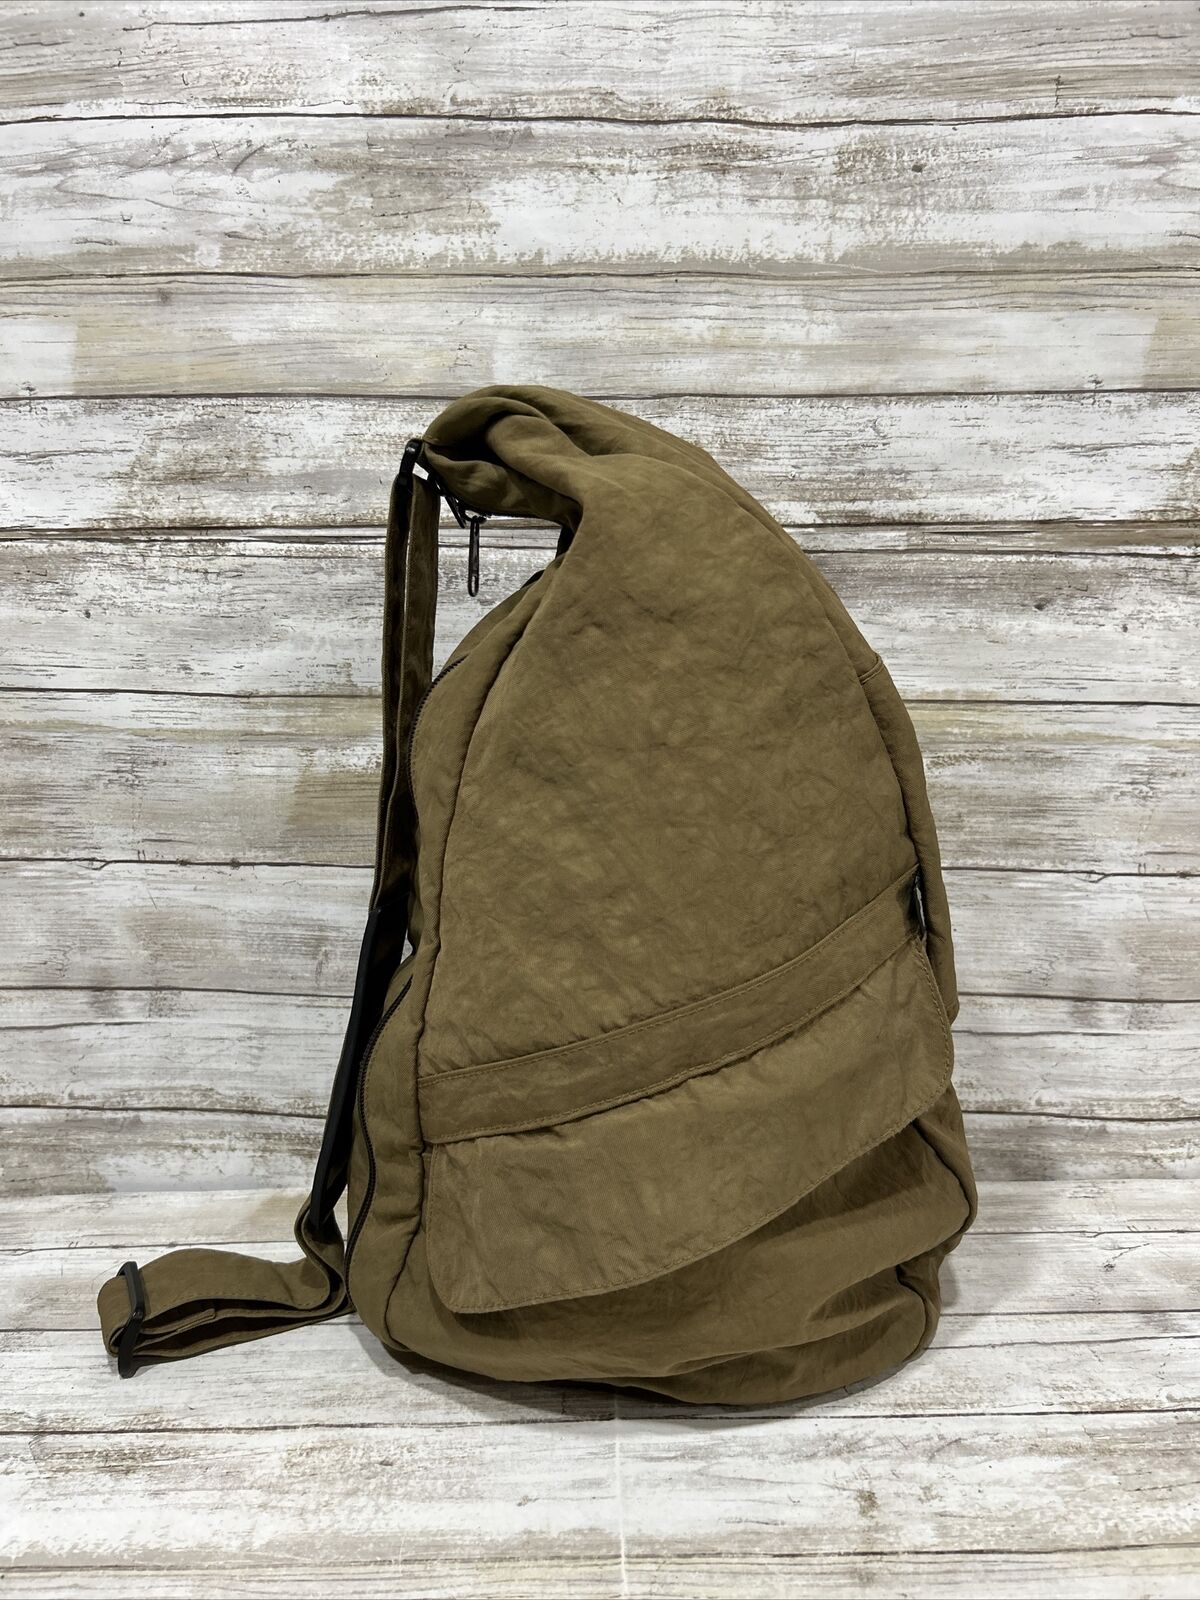 Ameribag Backpack Healthy Brown Nylon Kidney Sling Shoulder Travel Large Bag